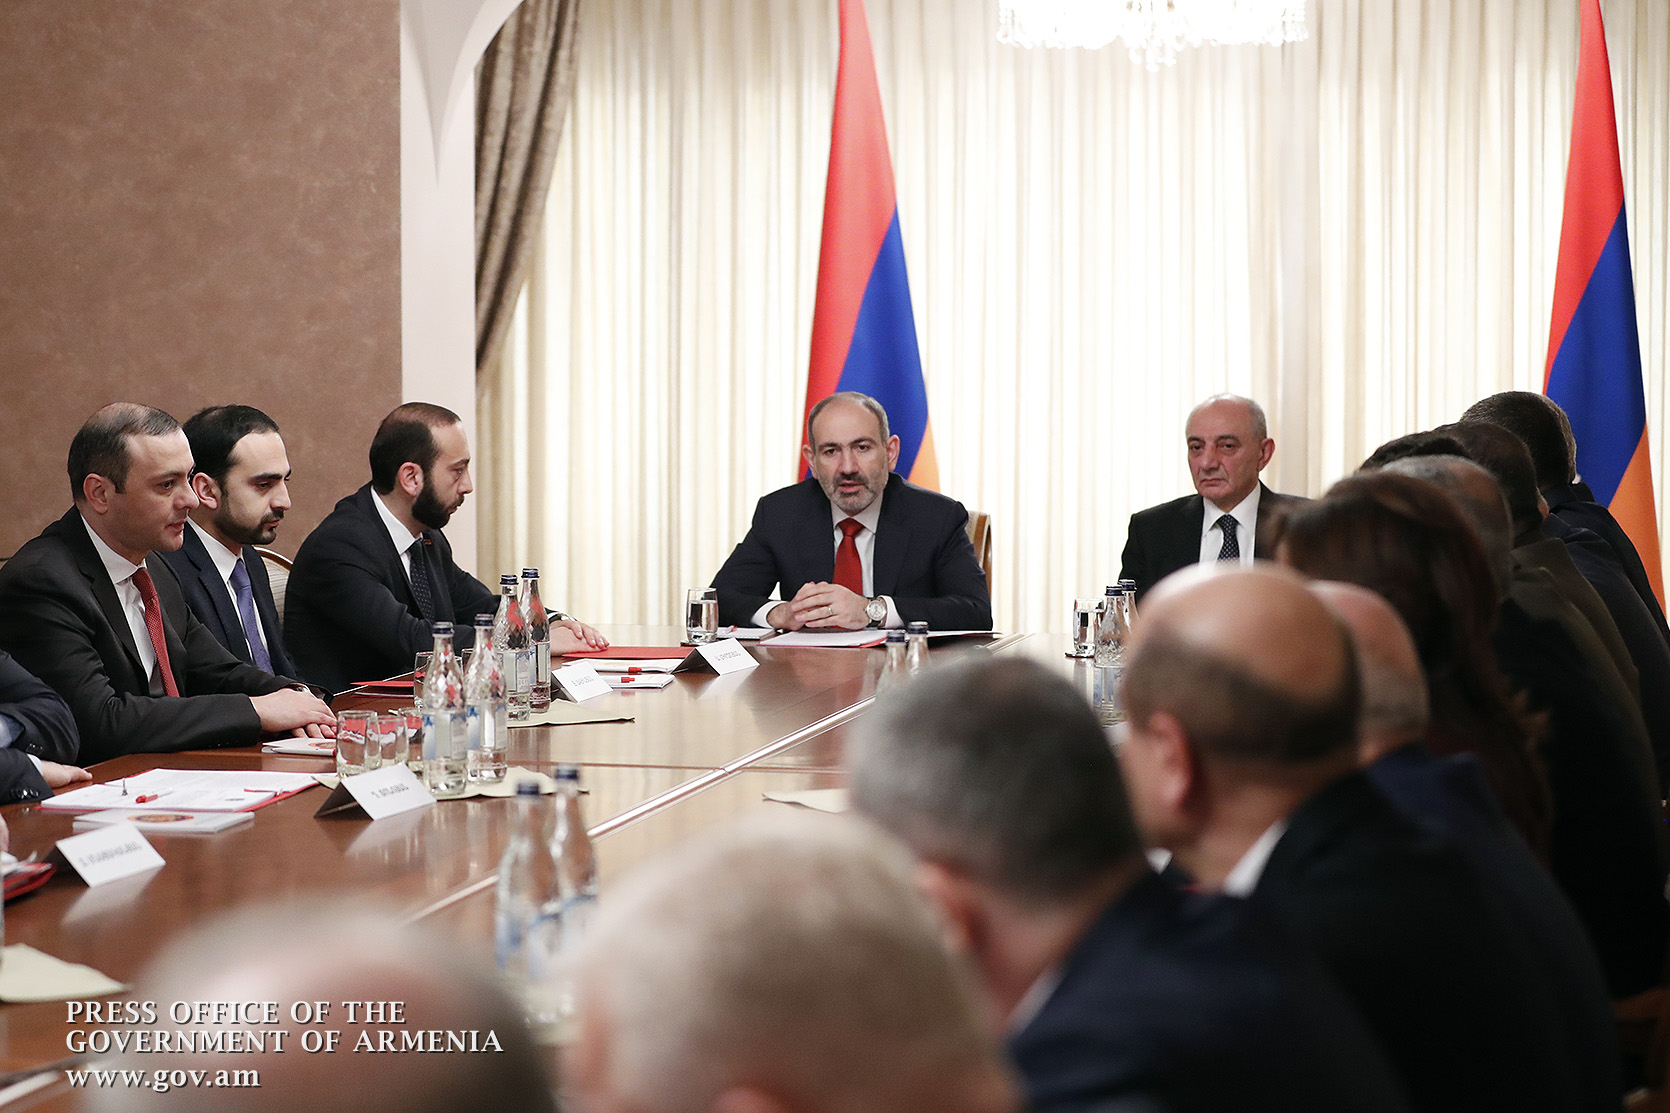 Представления властей Армении и Арцаха об урегулировании идентичны - Пашинян